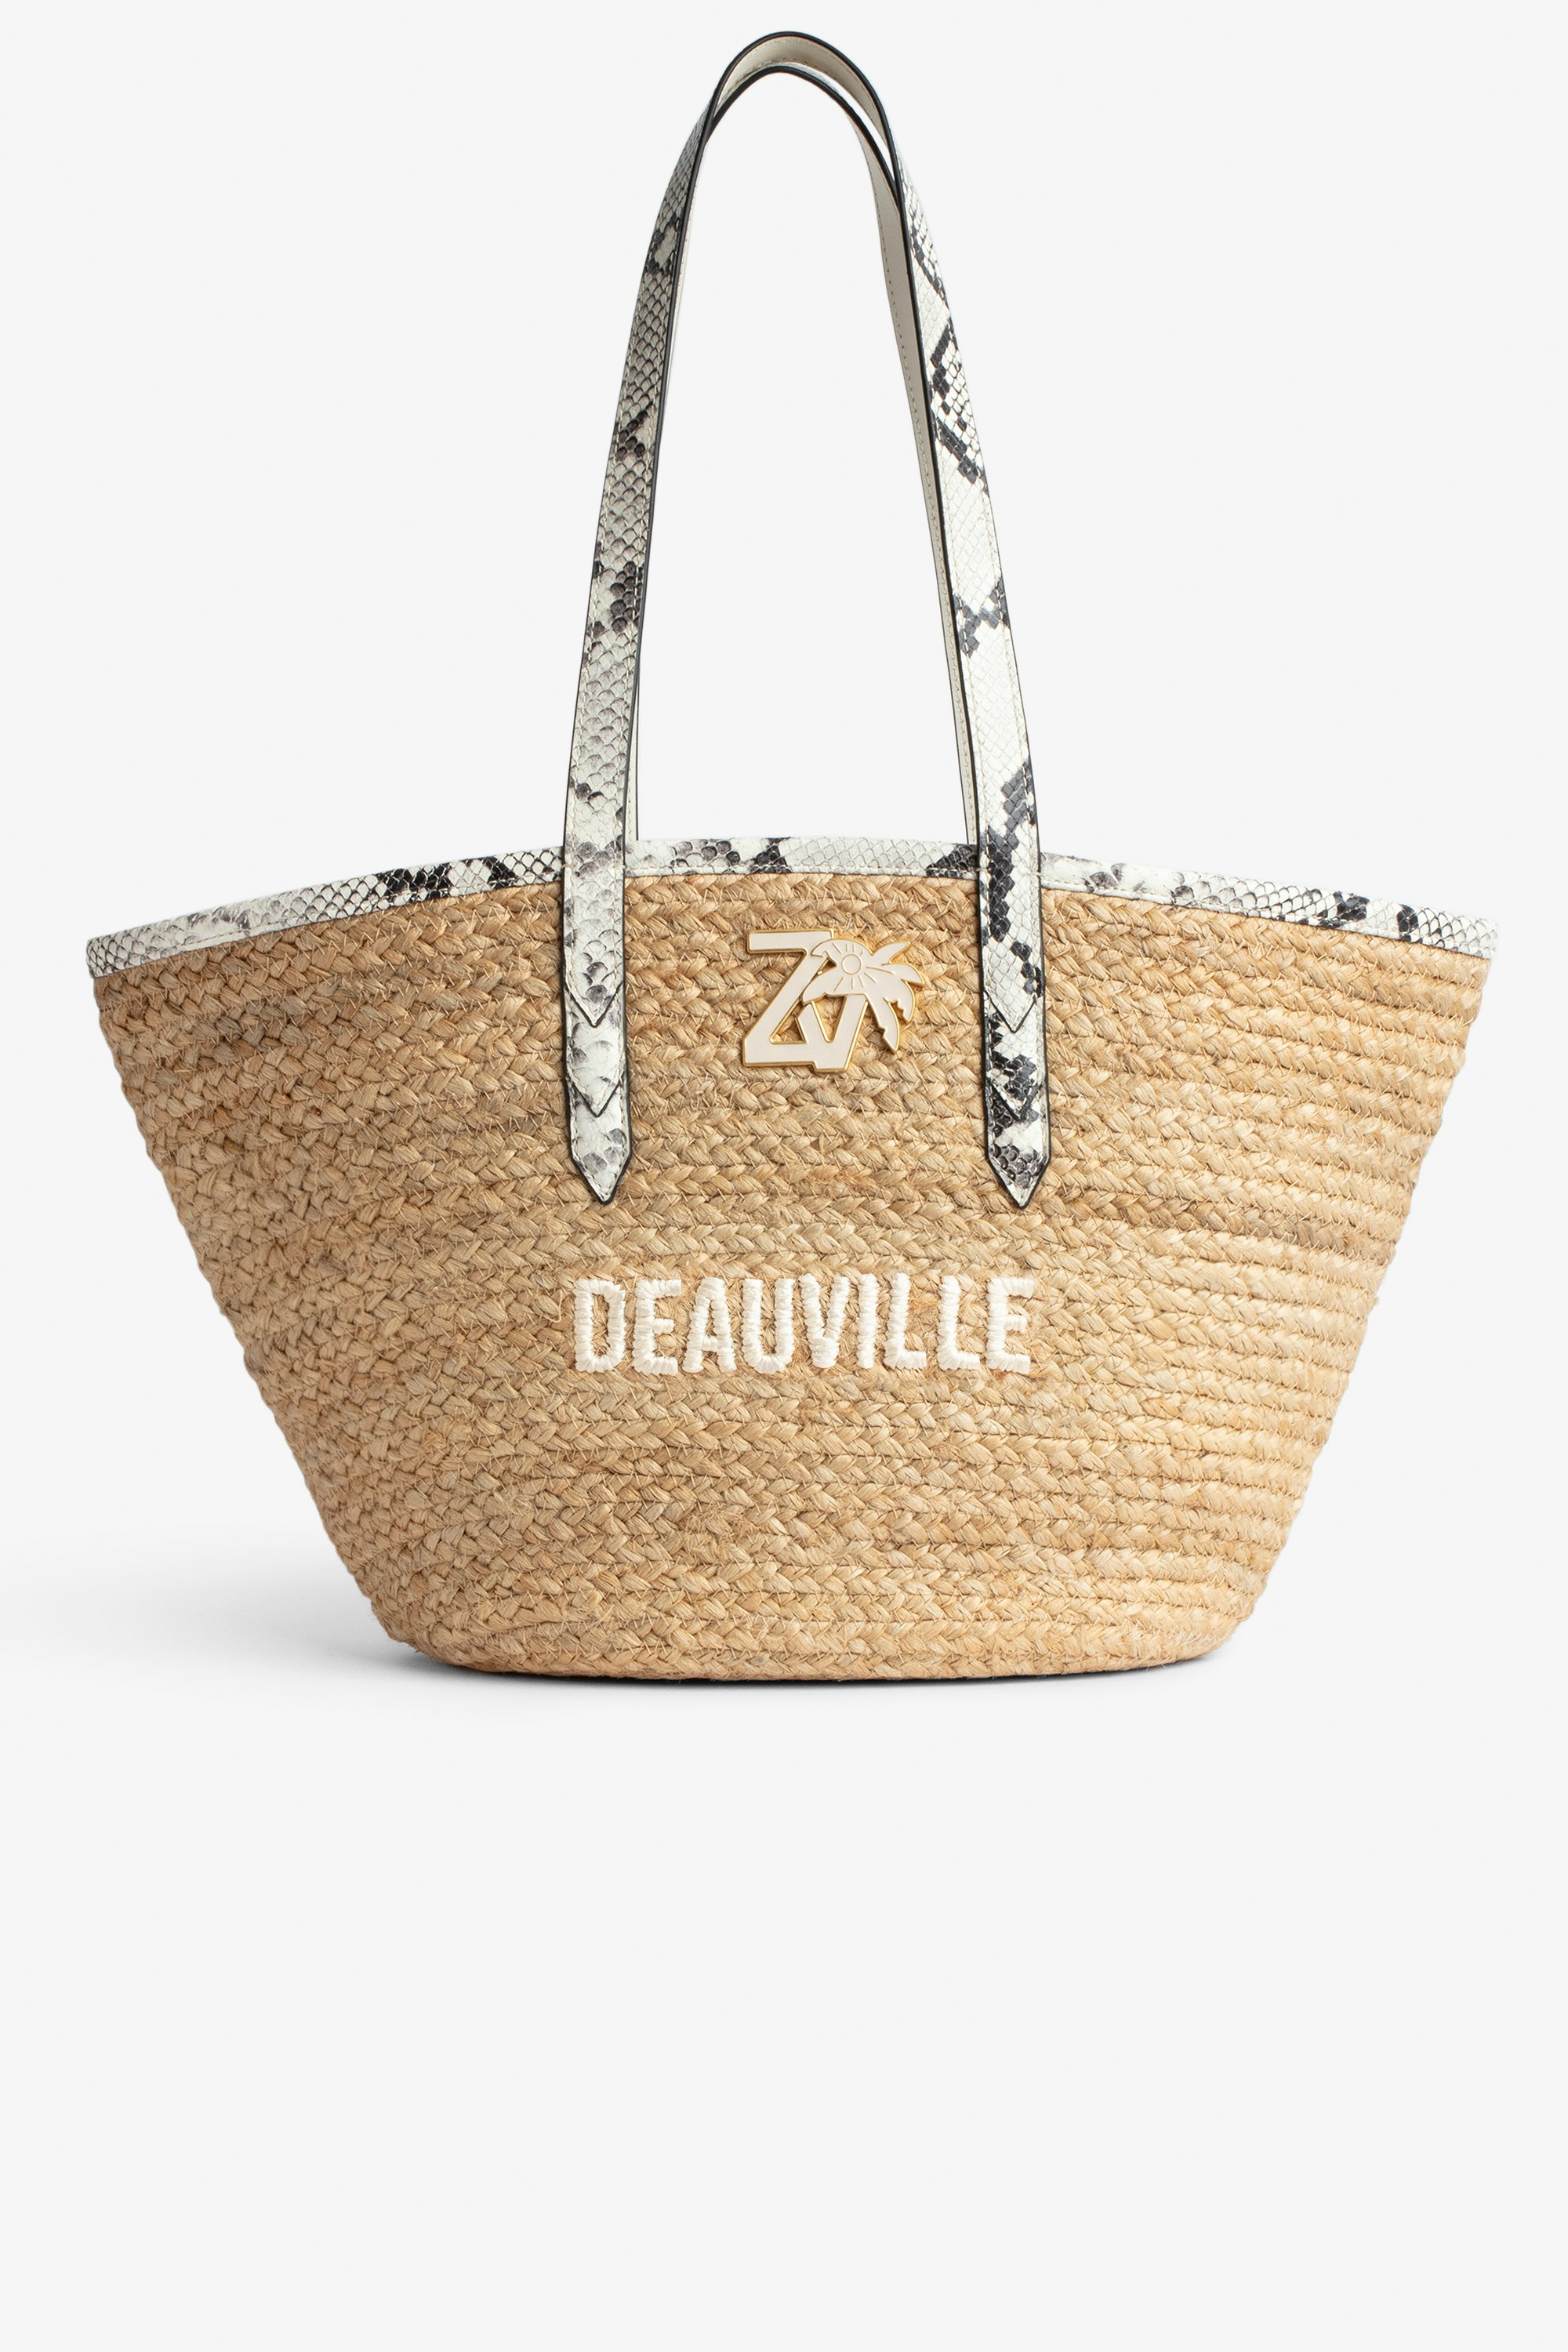 Sac Le Beach Bag Sac en paille à anses en cuir écru effet python, brodé "Deauville" et orné d'un charm ZV Femme